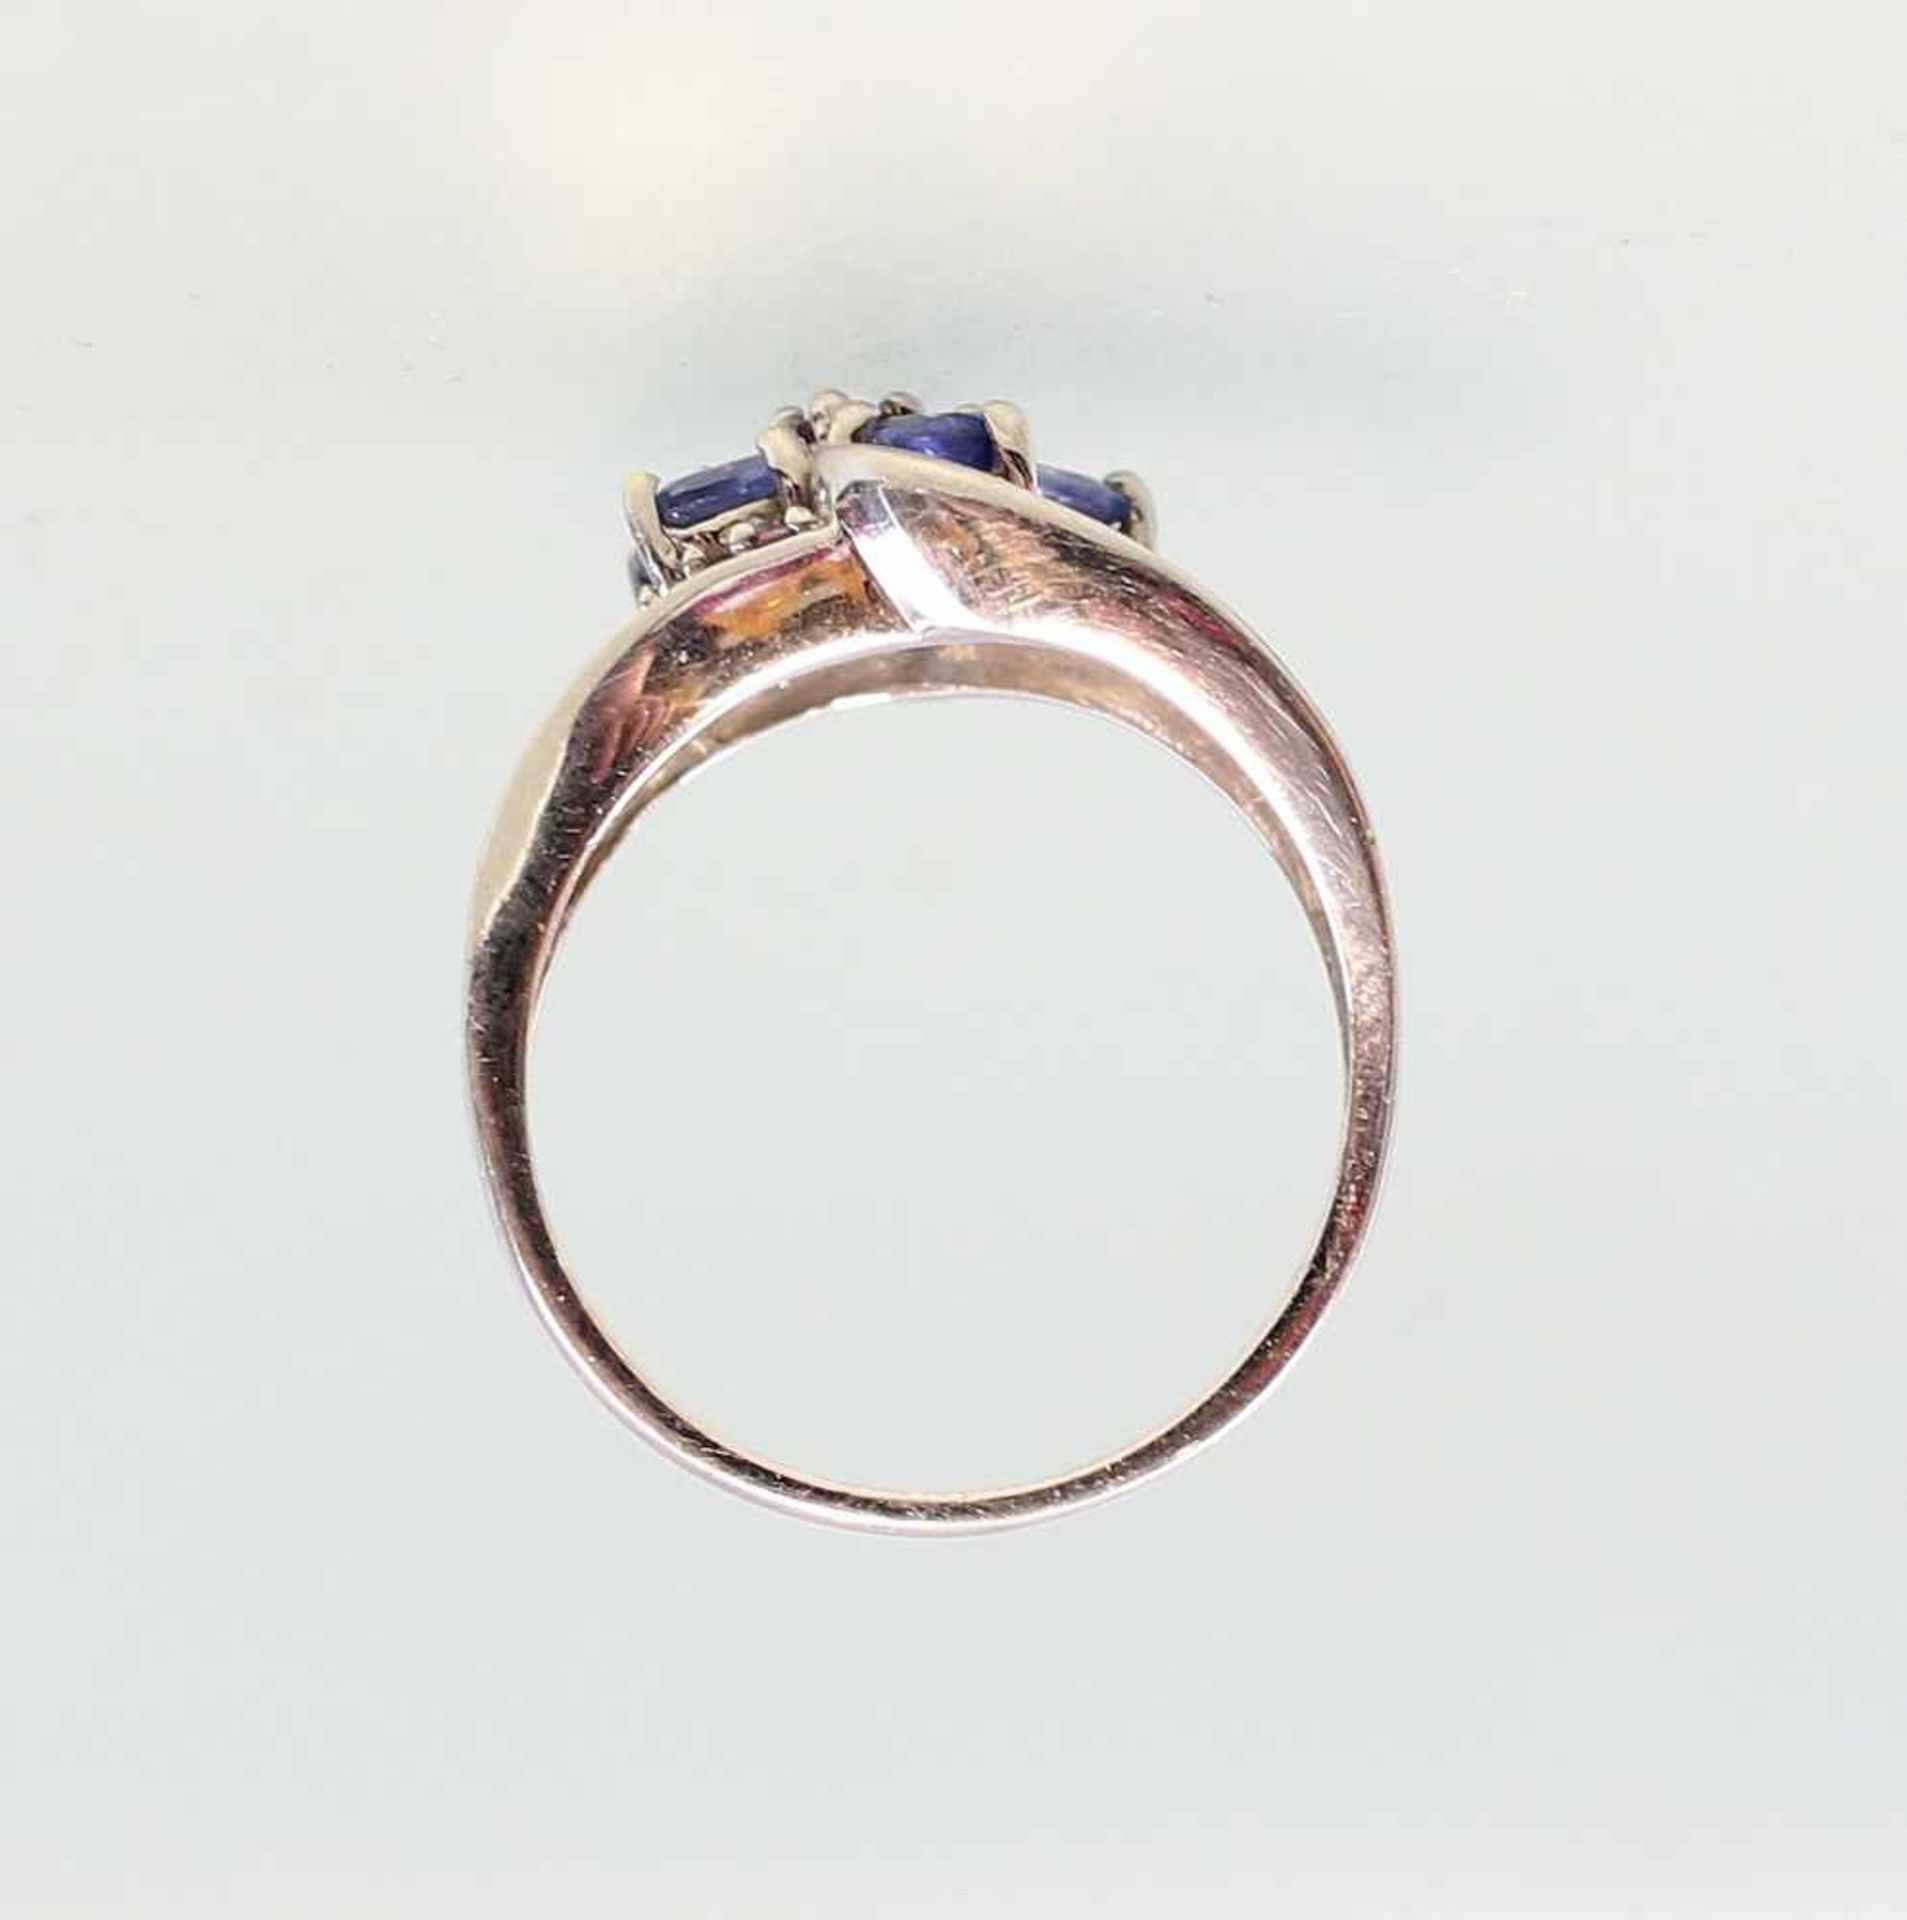 Weißgold-Ring mit violetten Steinen585er WG, 5,23 g, geschwungener, breiter Ringkopf besetzt mit - Bild 4 aus 5